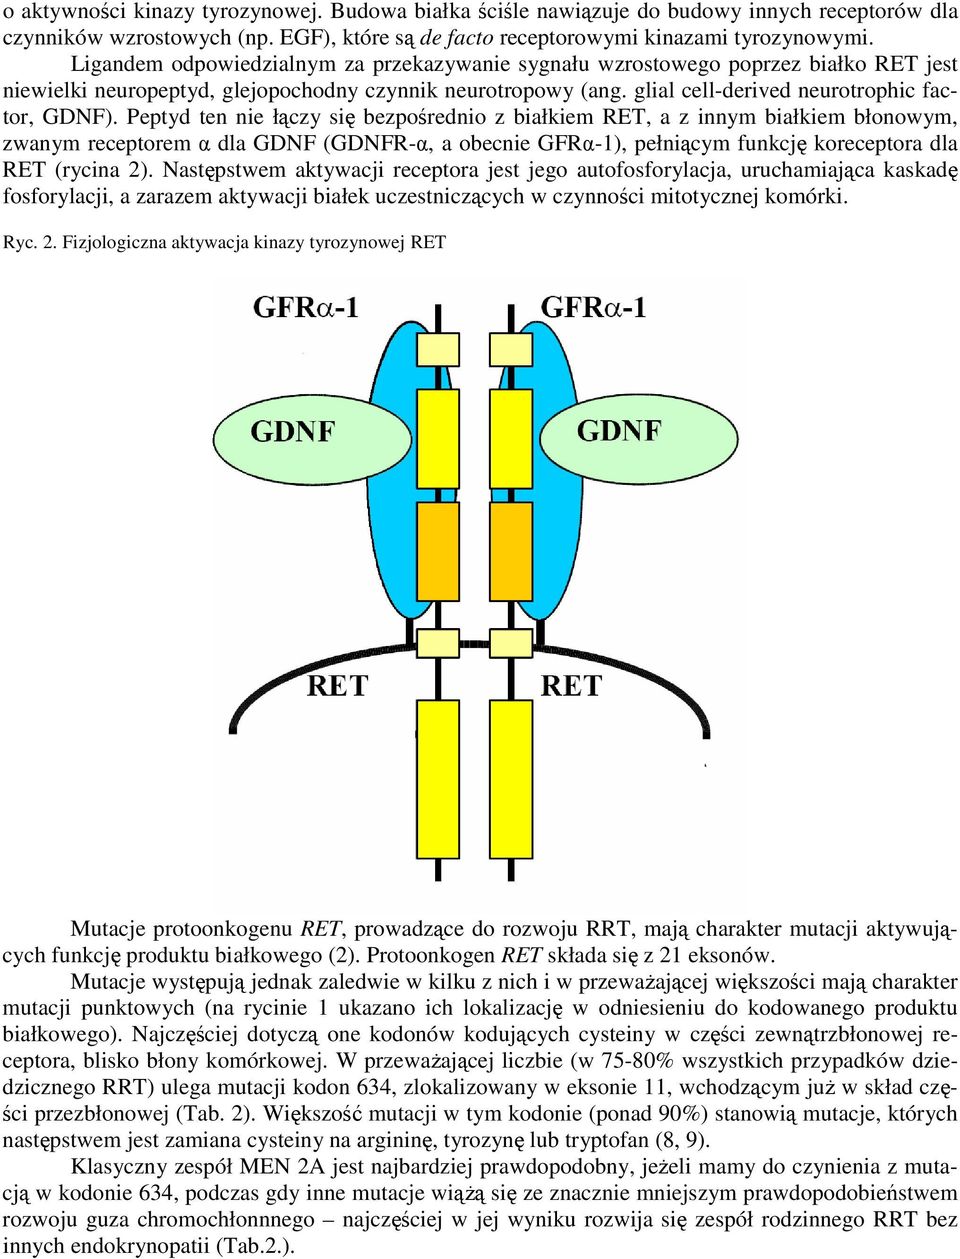 Peptyd ten nie łączy się bezpośrednio z białkiem RET, a z innym białkiem błonowym, zwanym receptorem α dla GDNF (GDNFR-α, a obecnie GFRα-1), pełniącym funkcję koreceptora dla RET (rycina 2).